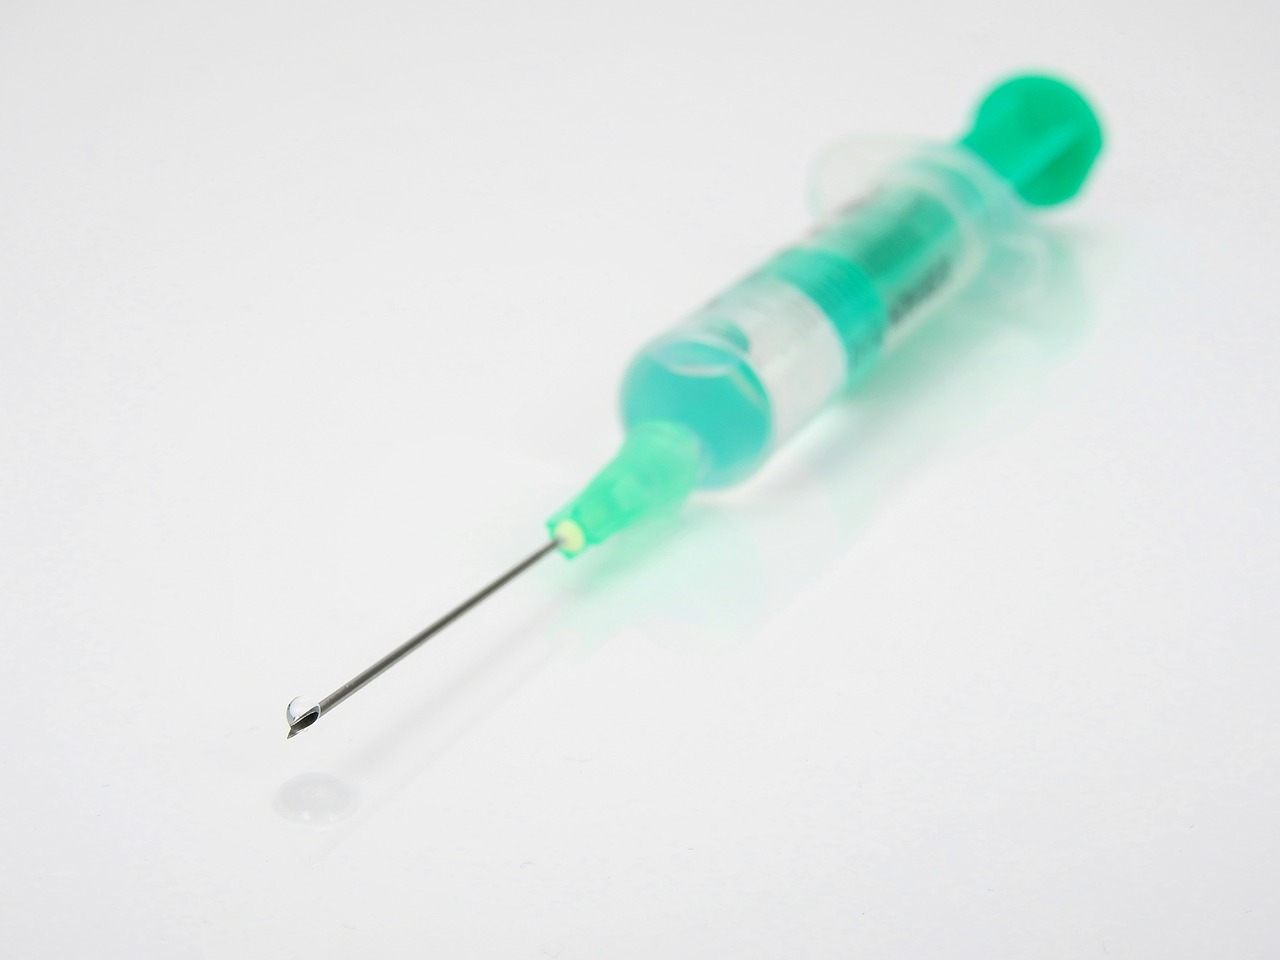 syringe needle disposable syringe free photo